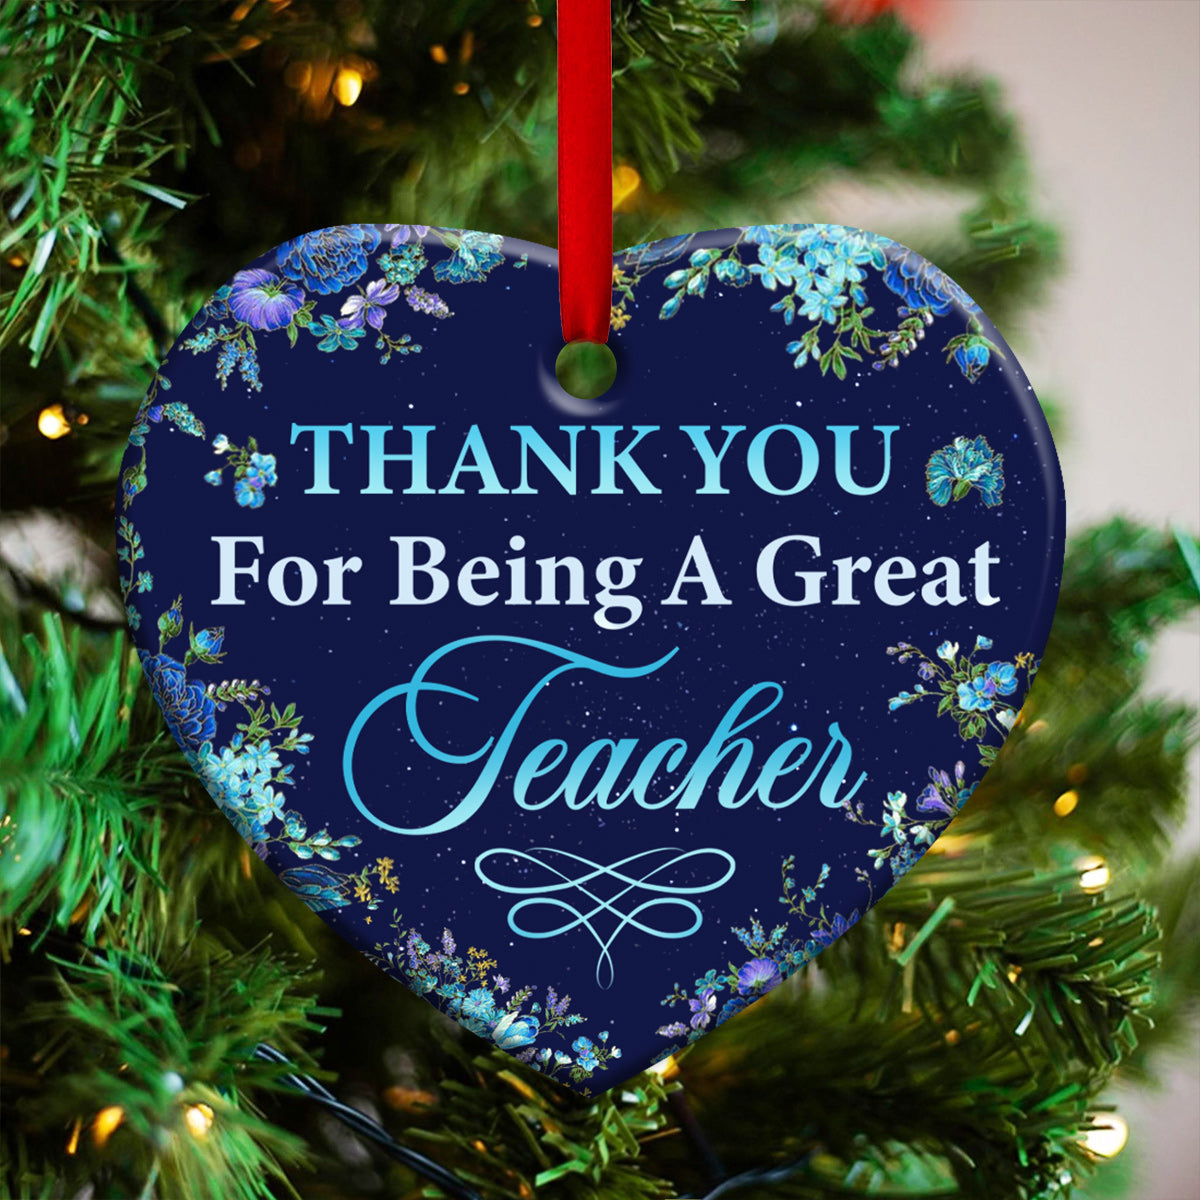 Teacher Thank You For Being A Great Teacher - Heart Ornament - Owls Matrix LTD